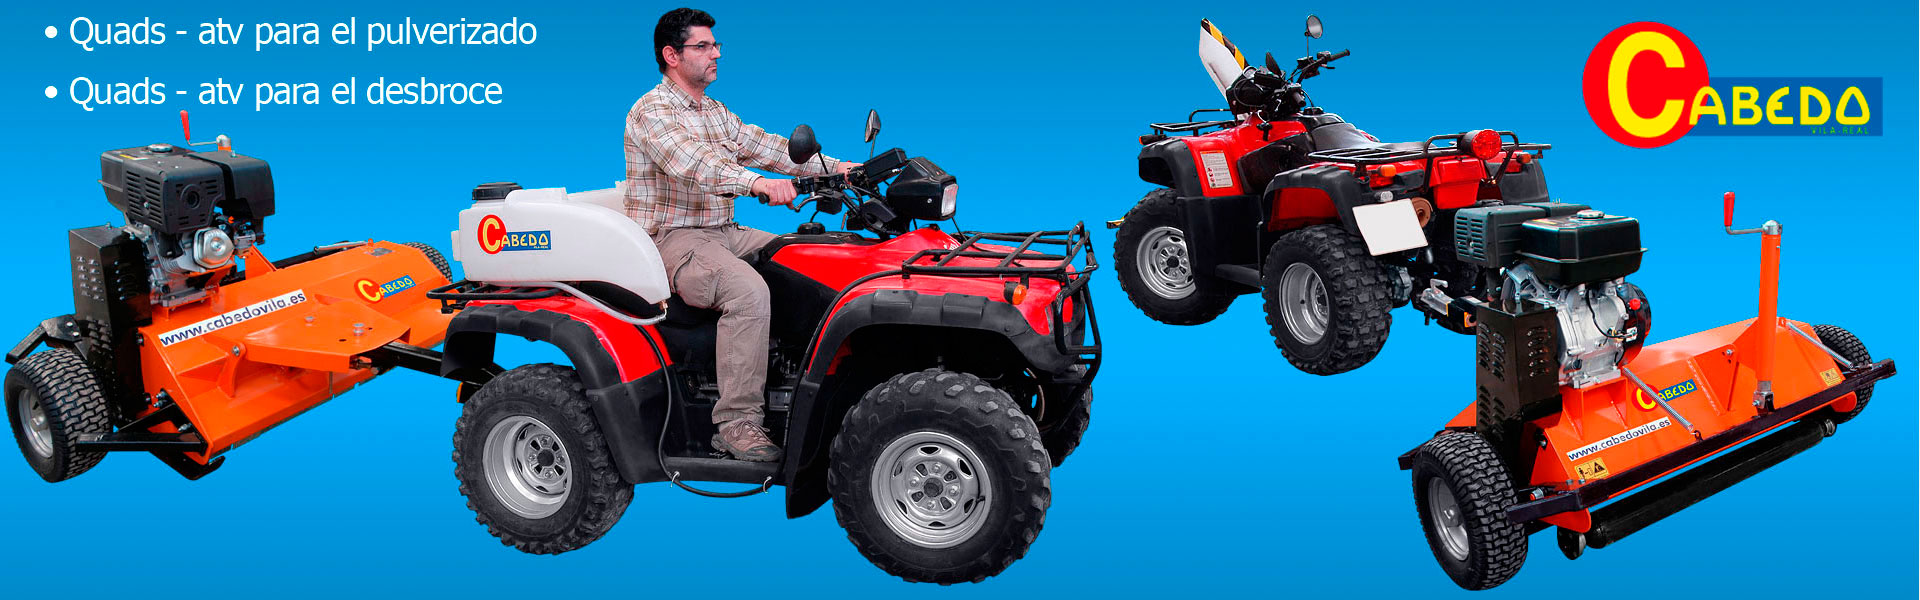 Accesorios para Quad - ATV para la Agricultura - Cabedo